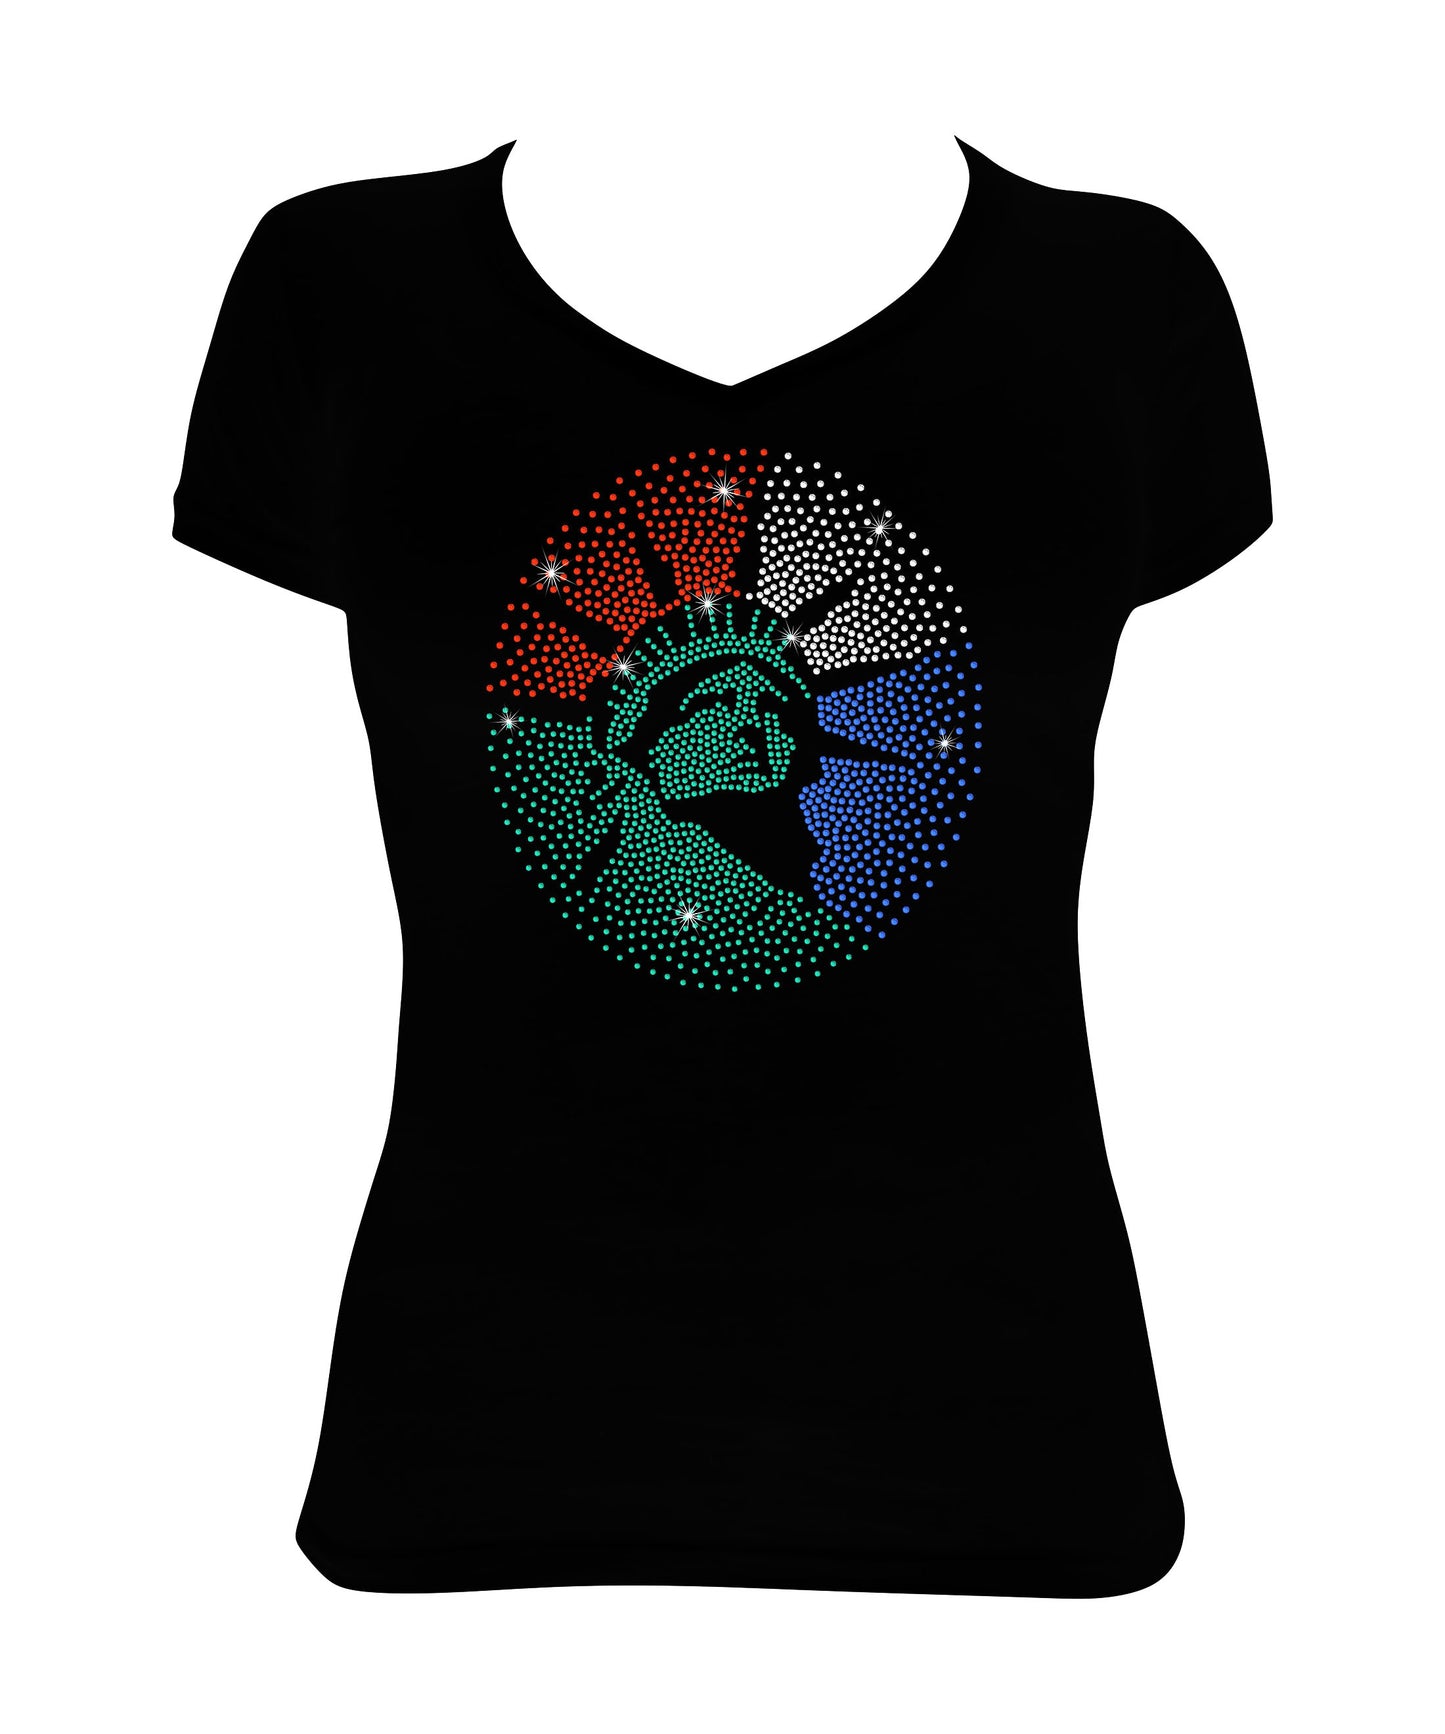 Statue of Libery - Patriotic Shirt, USA, Lady Liberty